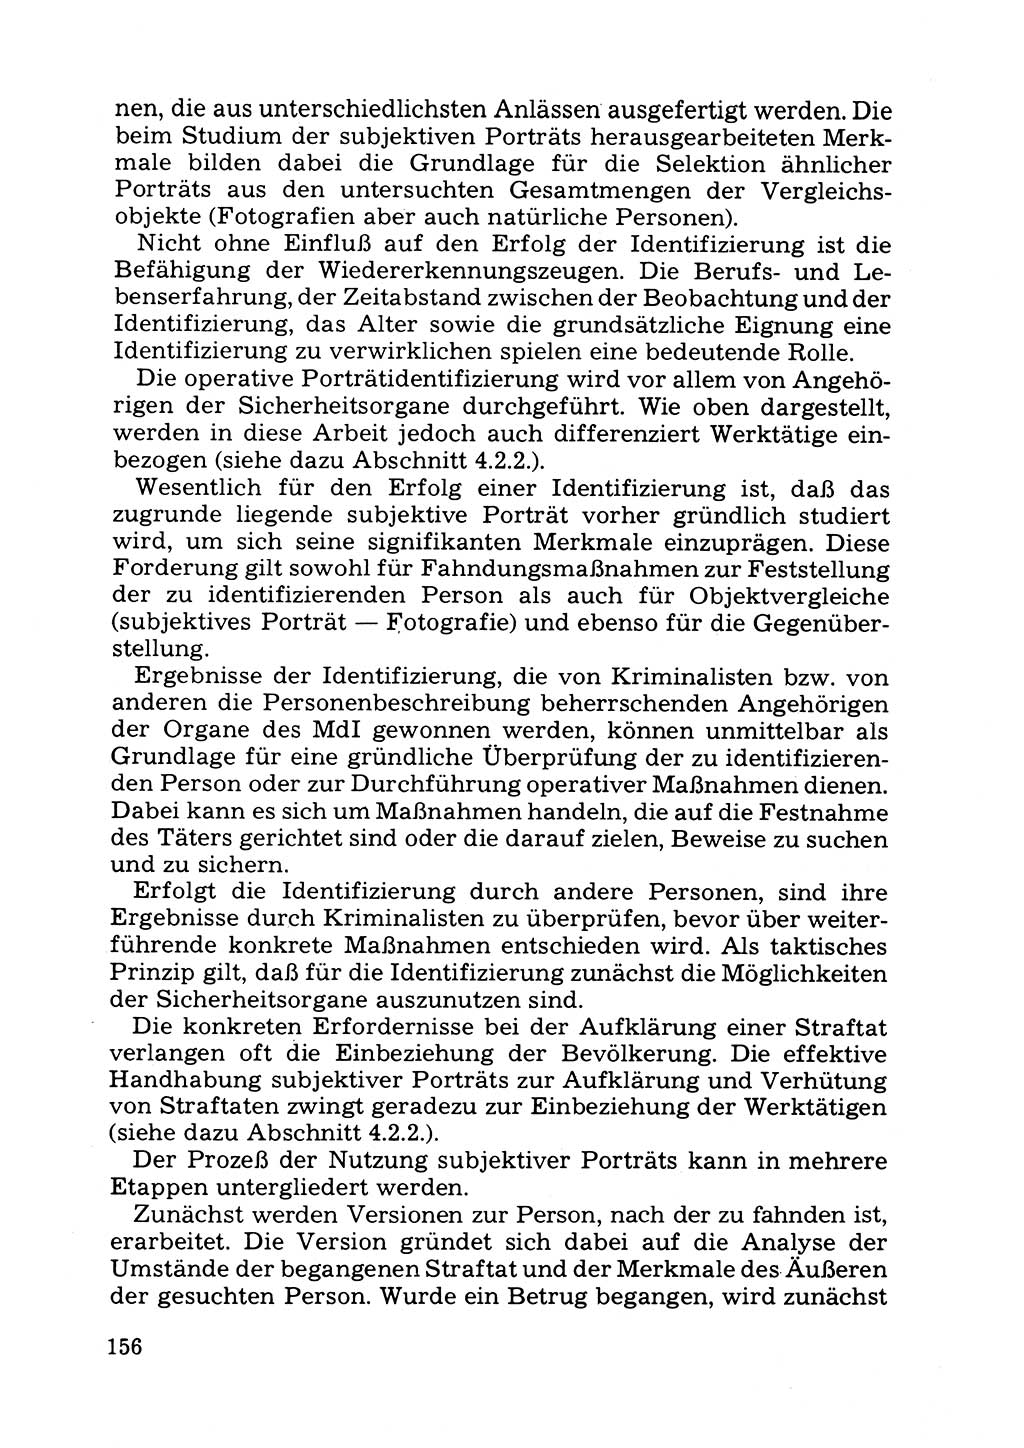 Das subjektive Porträt [Deutsche Demokratische Republik (DDR)] 1981, Seite 156 (Subj. Port. DDR 1981, S. 156)